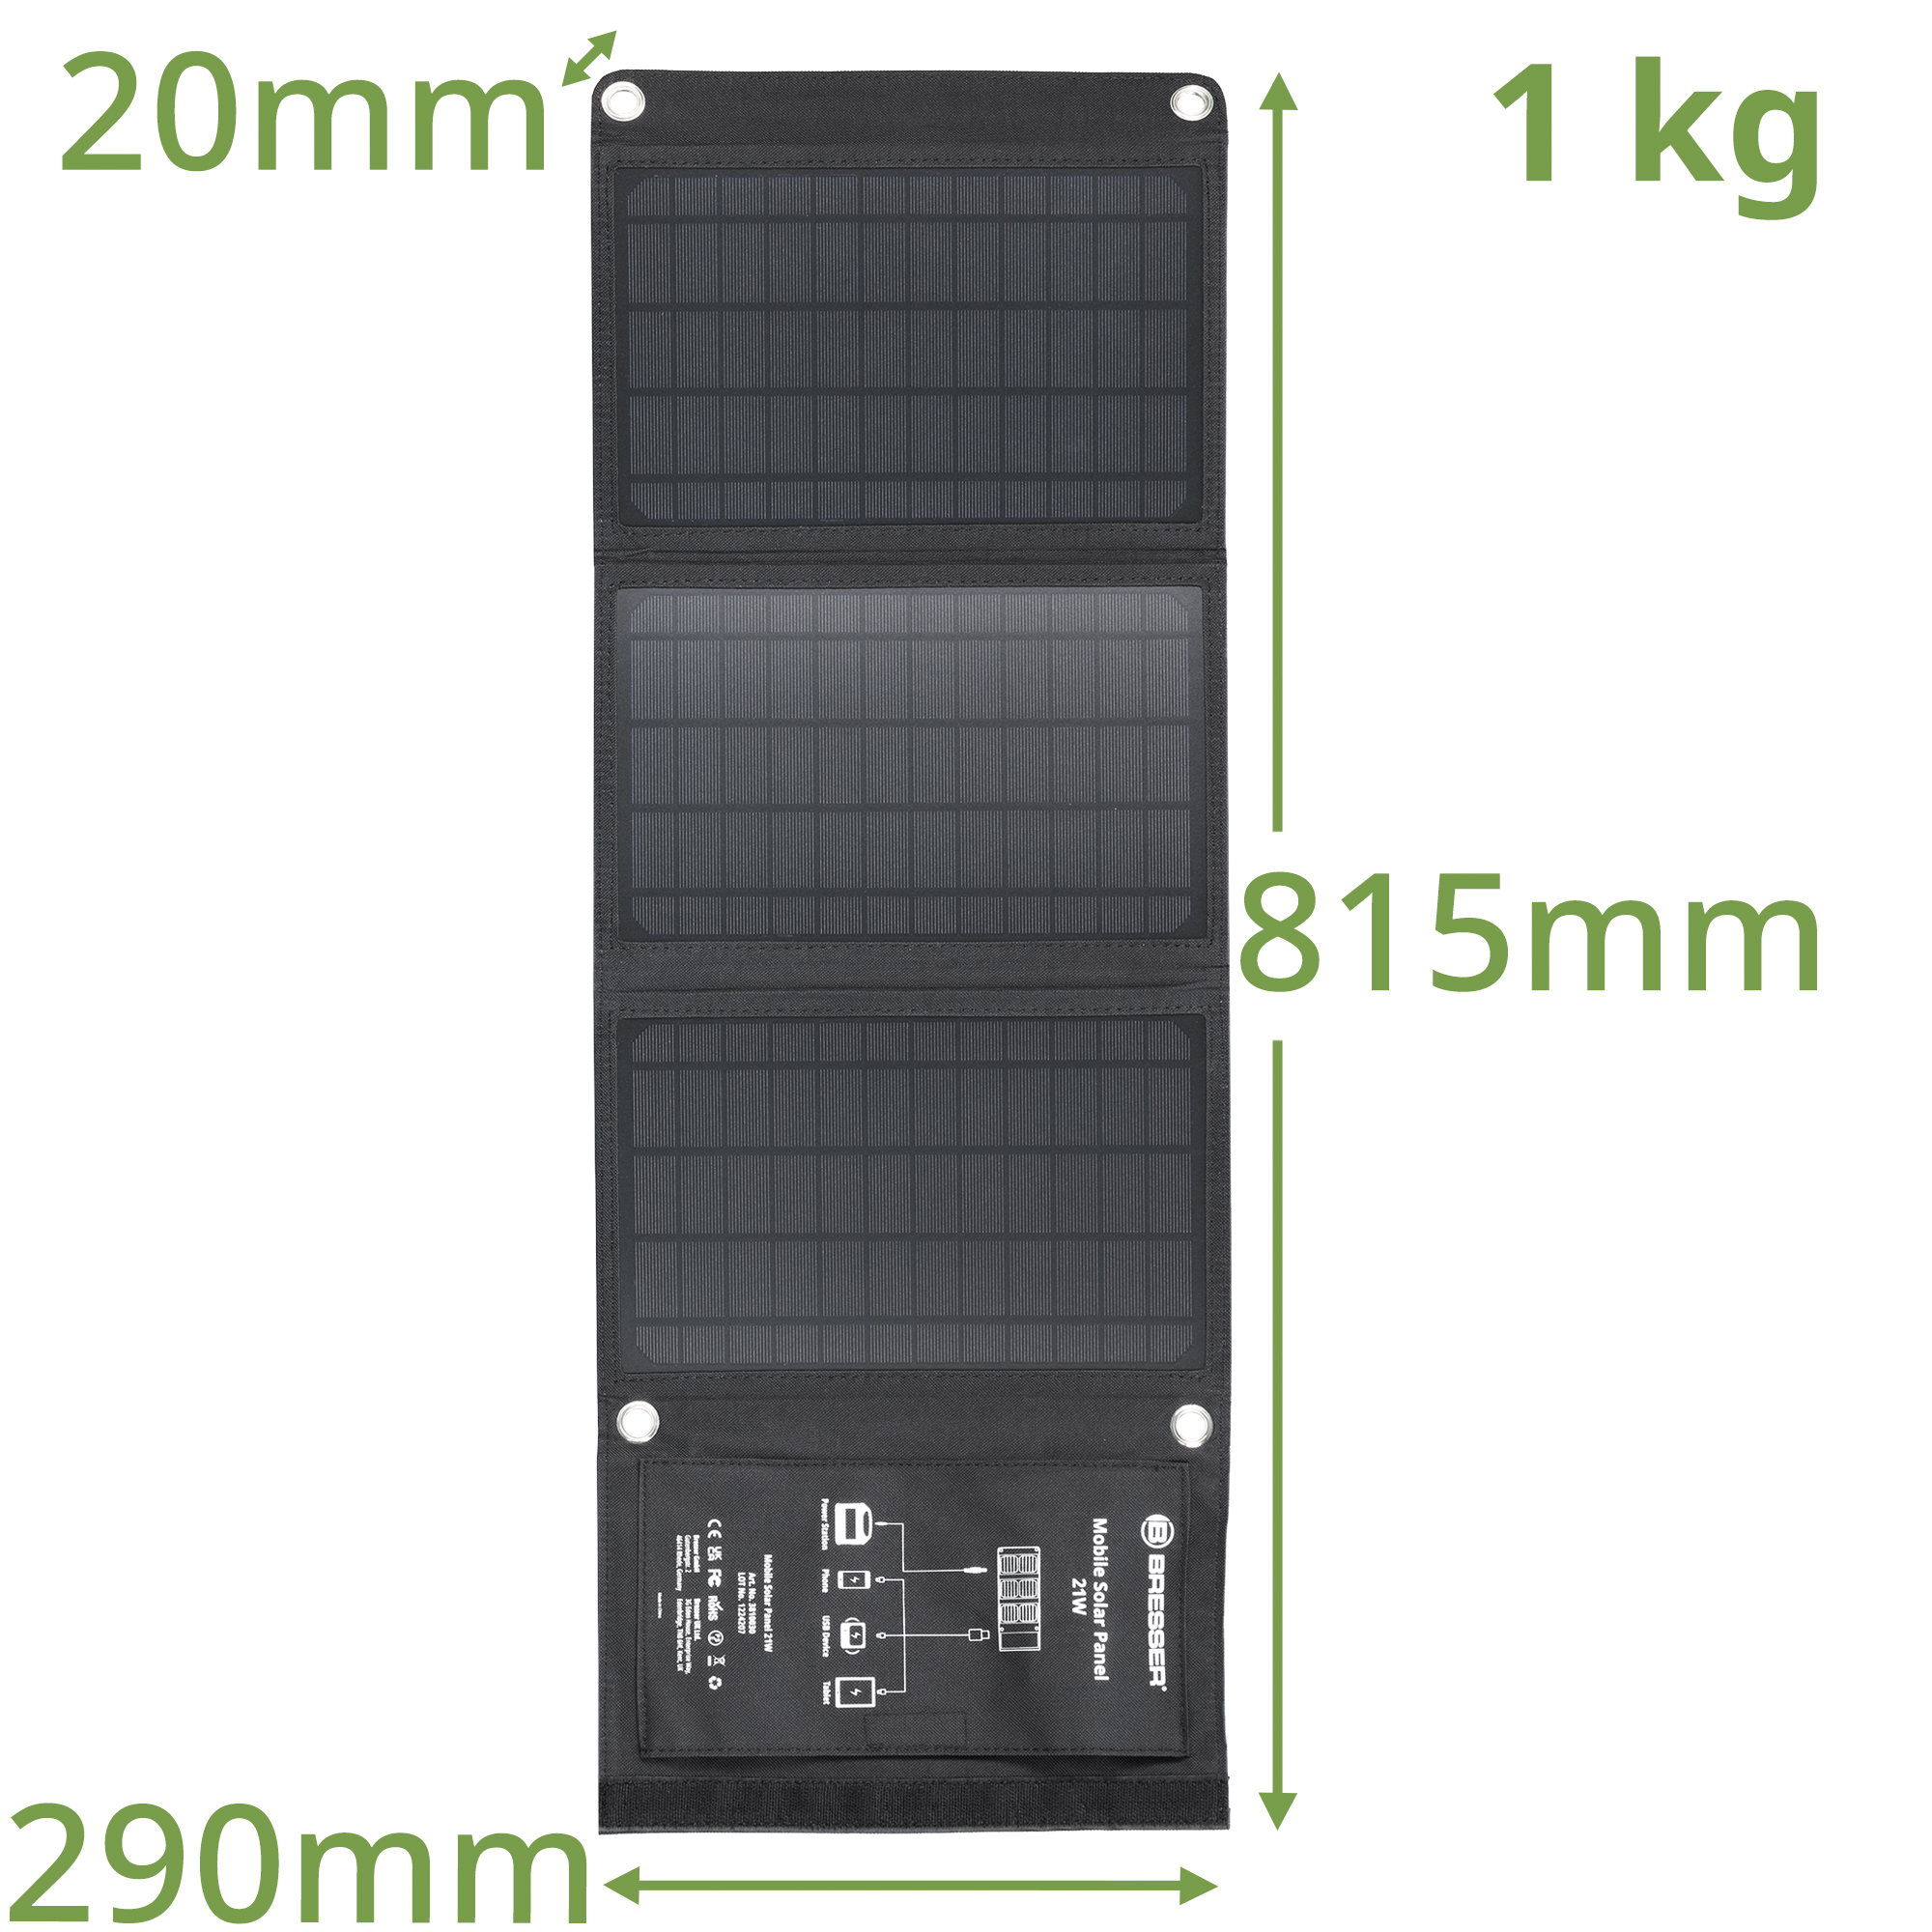 Cargador solar móvil BRESSER de 21 vatios con salida USB y DC